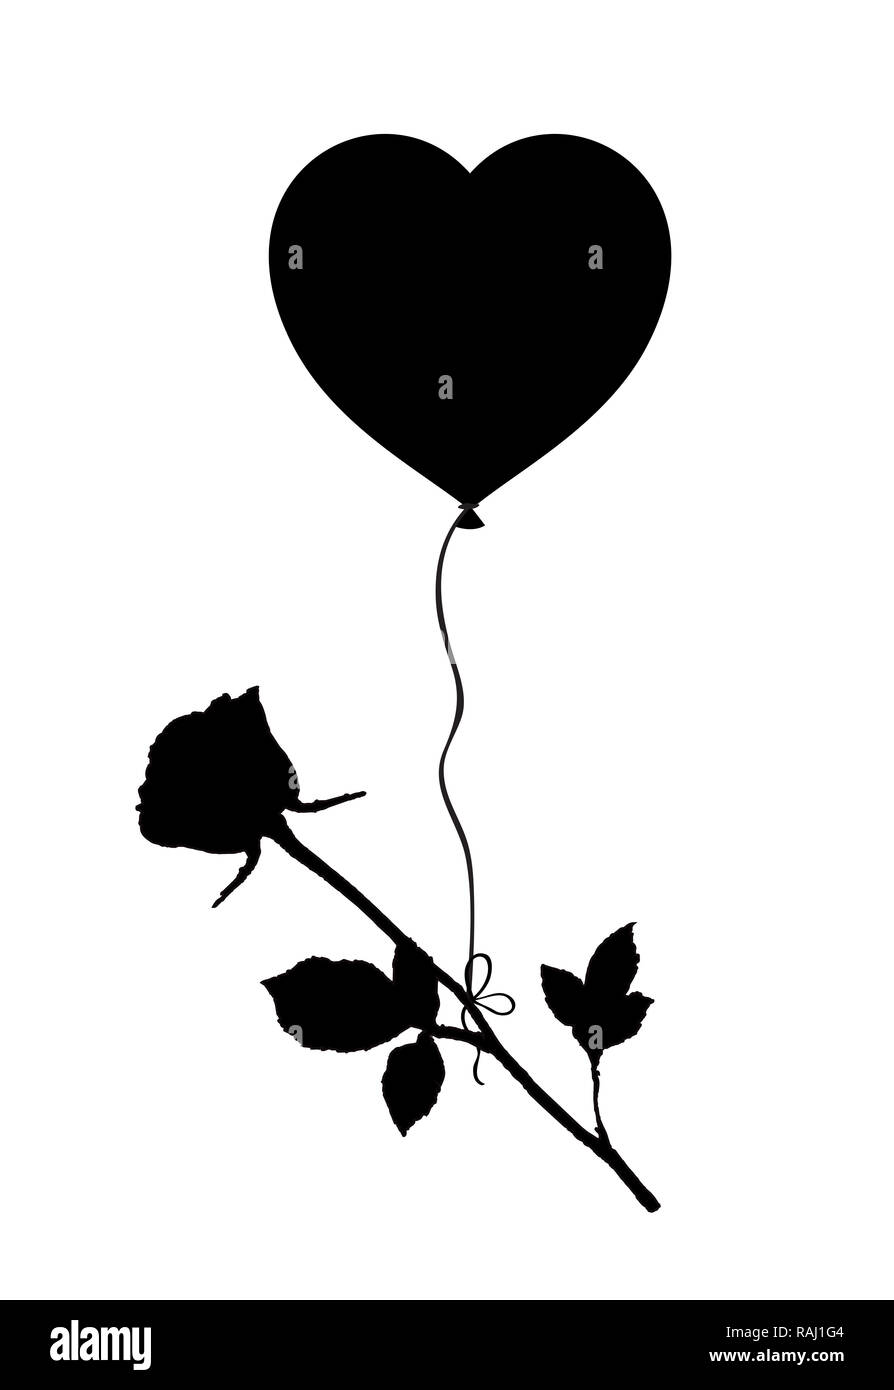 Schwarze Silhouette Von Rose Blume Fliegen Auf Helium Ballon In Herzform Auf Weissem Hintergrund Schwarzweiss Bild Symbol Zeichen Clip Art Stockfotografie Alamy